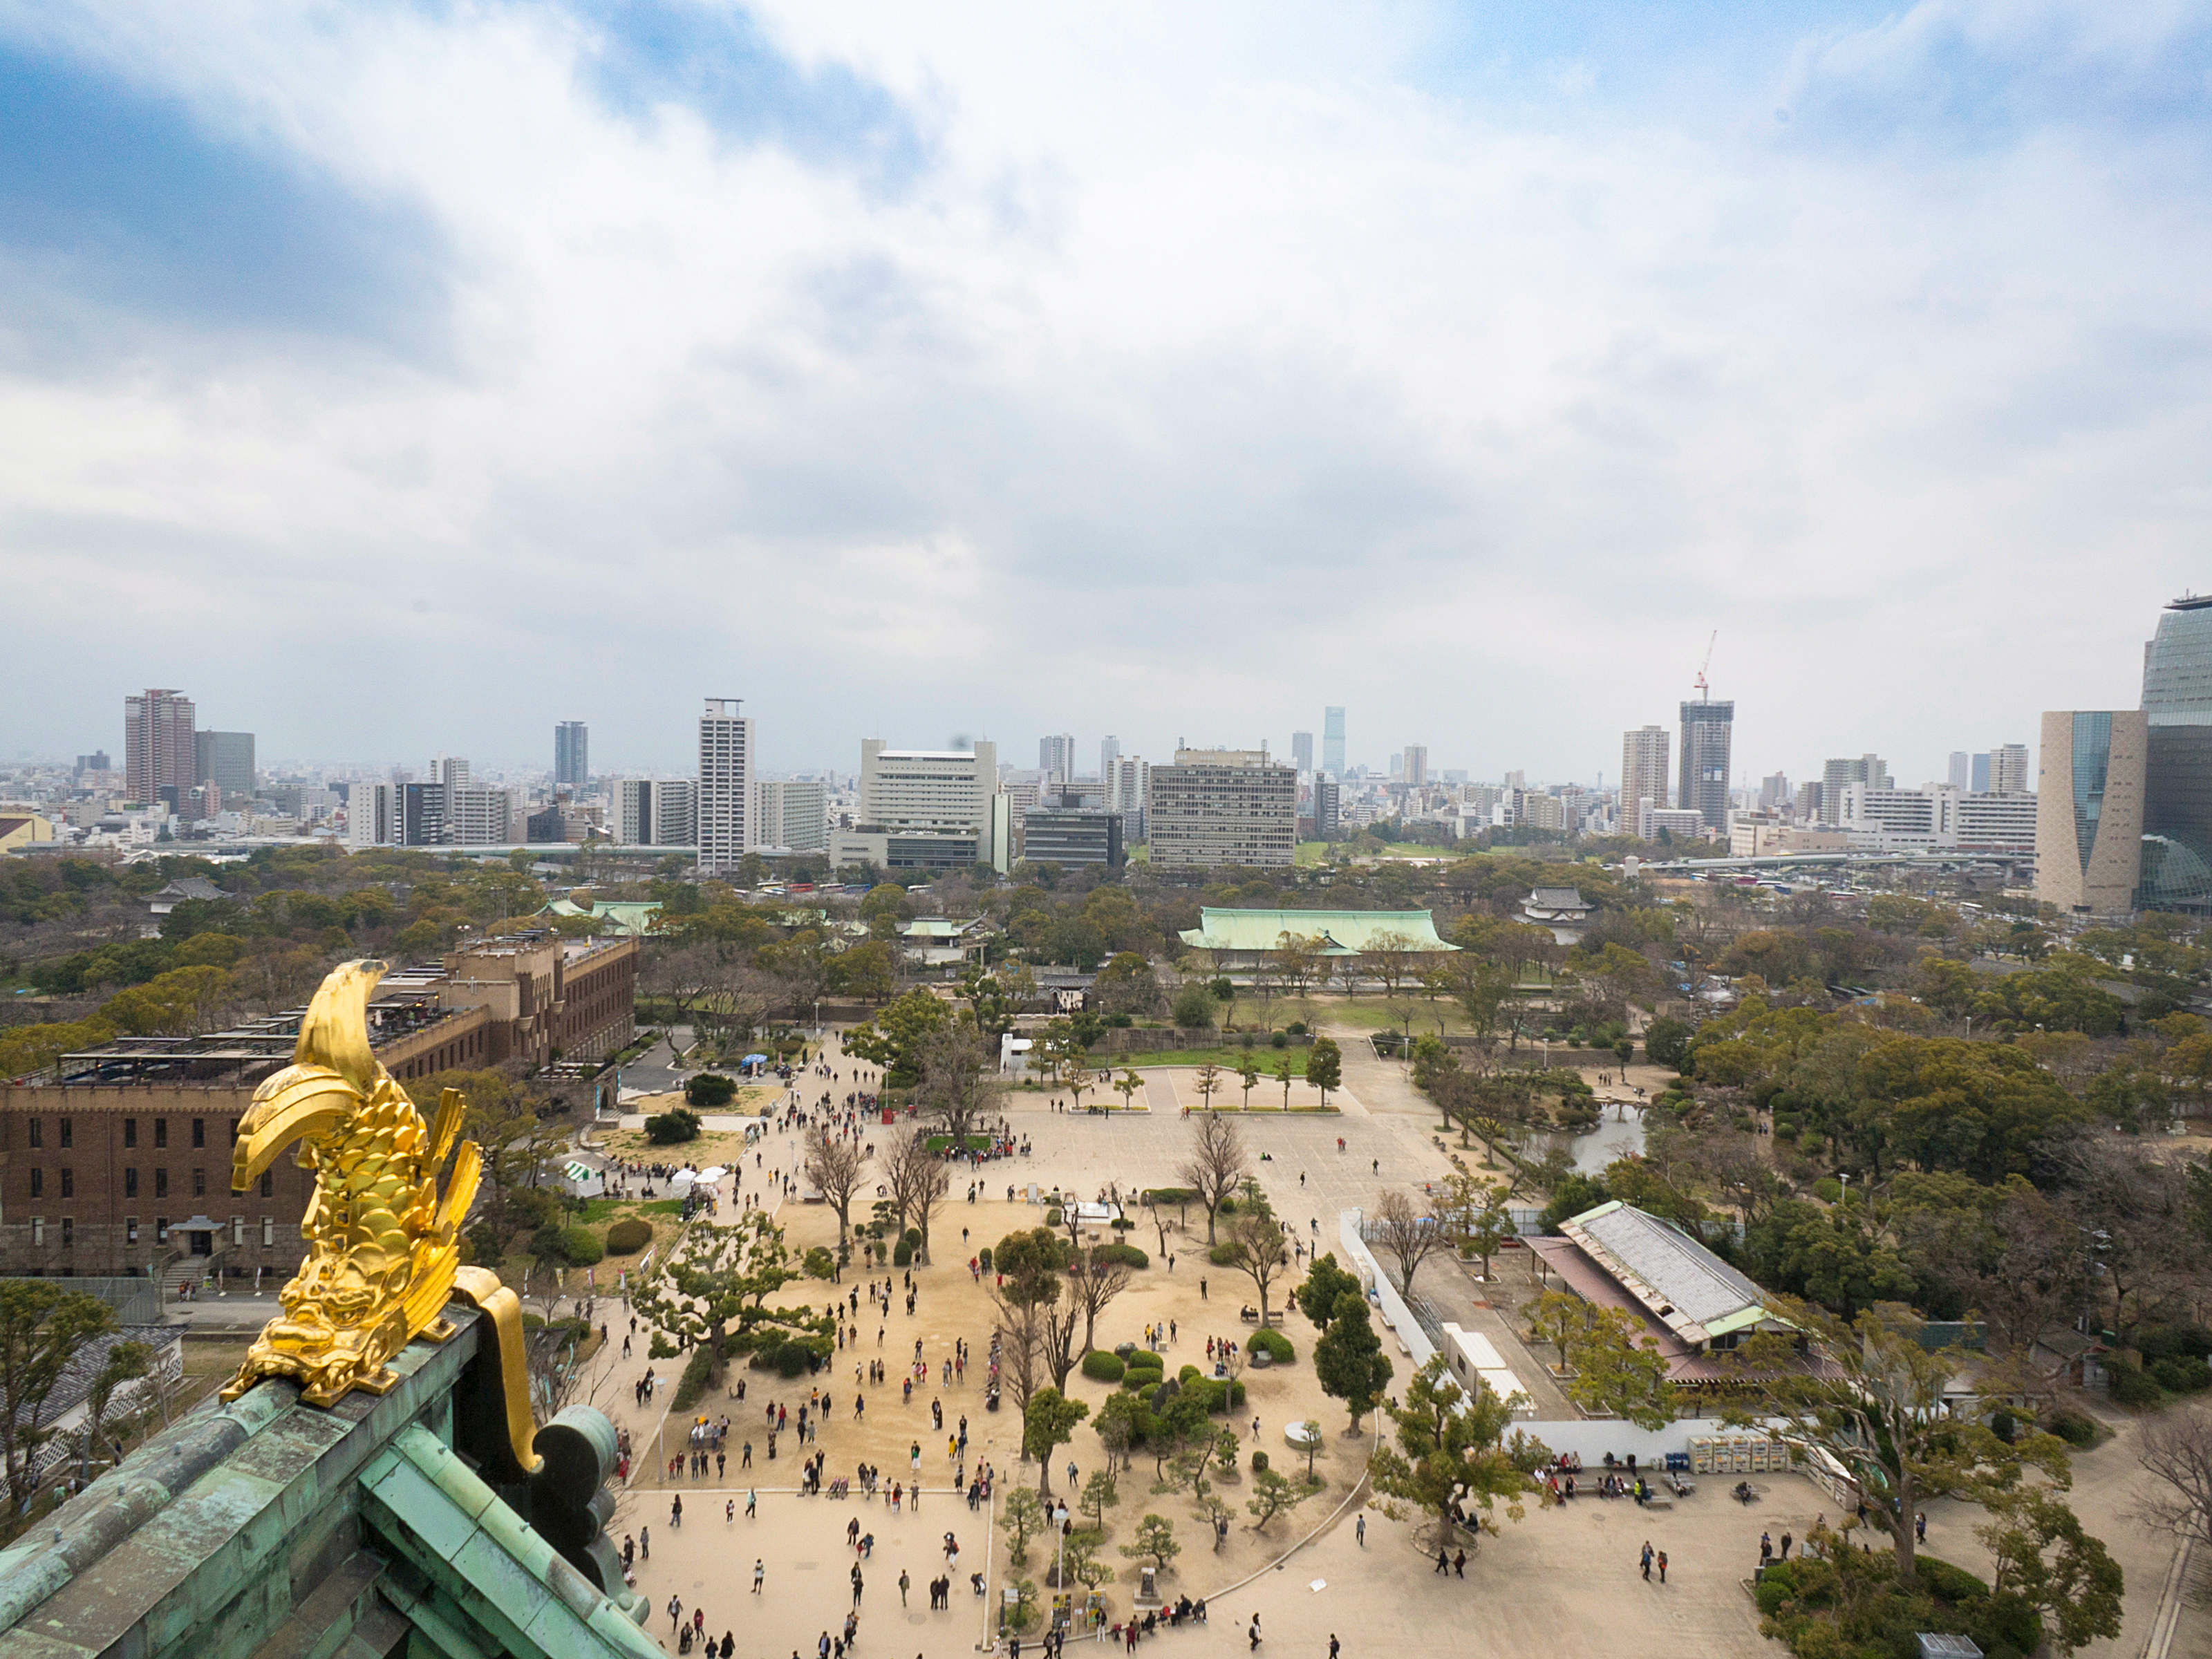 从观景台可以拍到以金鯱为前景的大阪城市风光照